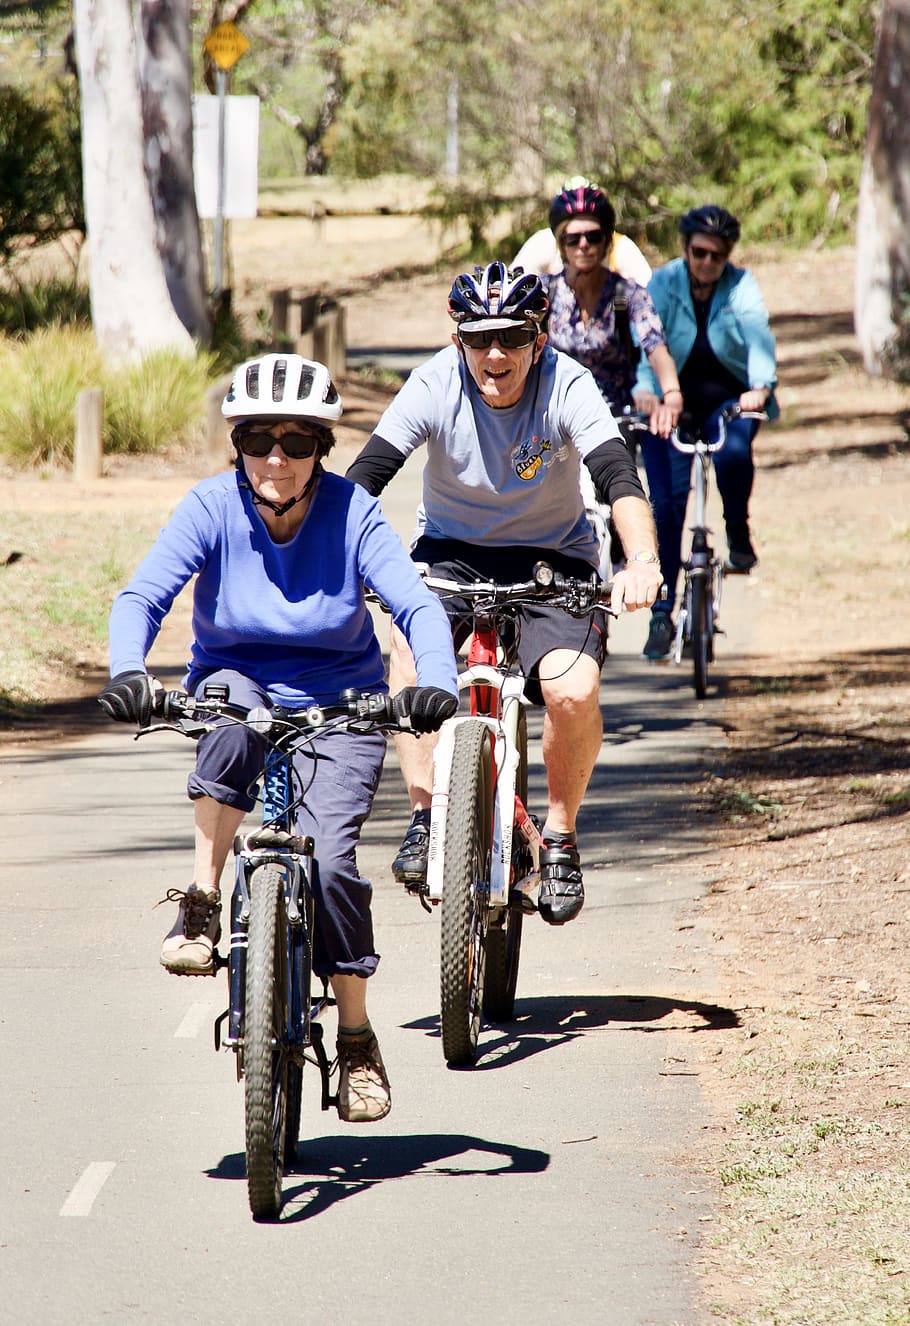 pilotos, bicicletas, andar de bicicleta, diversão, amigos, atividade, lazer, saudável, ao ar livre, bicicleta